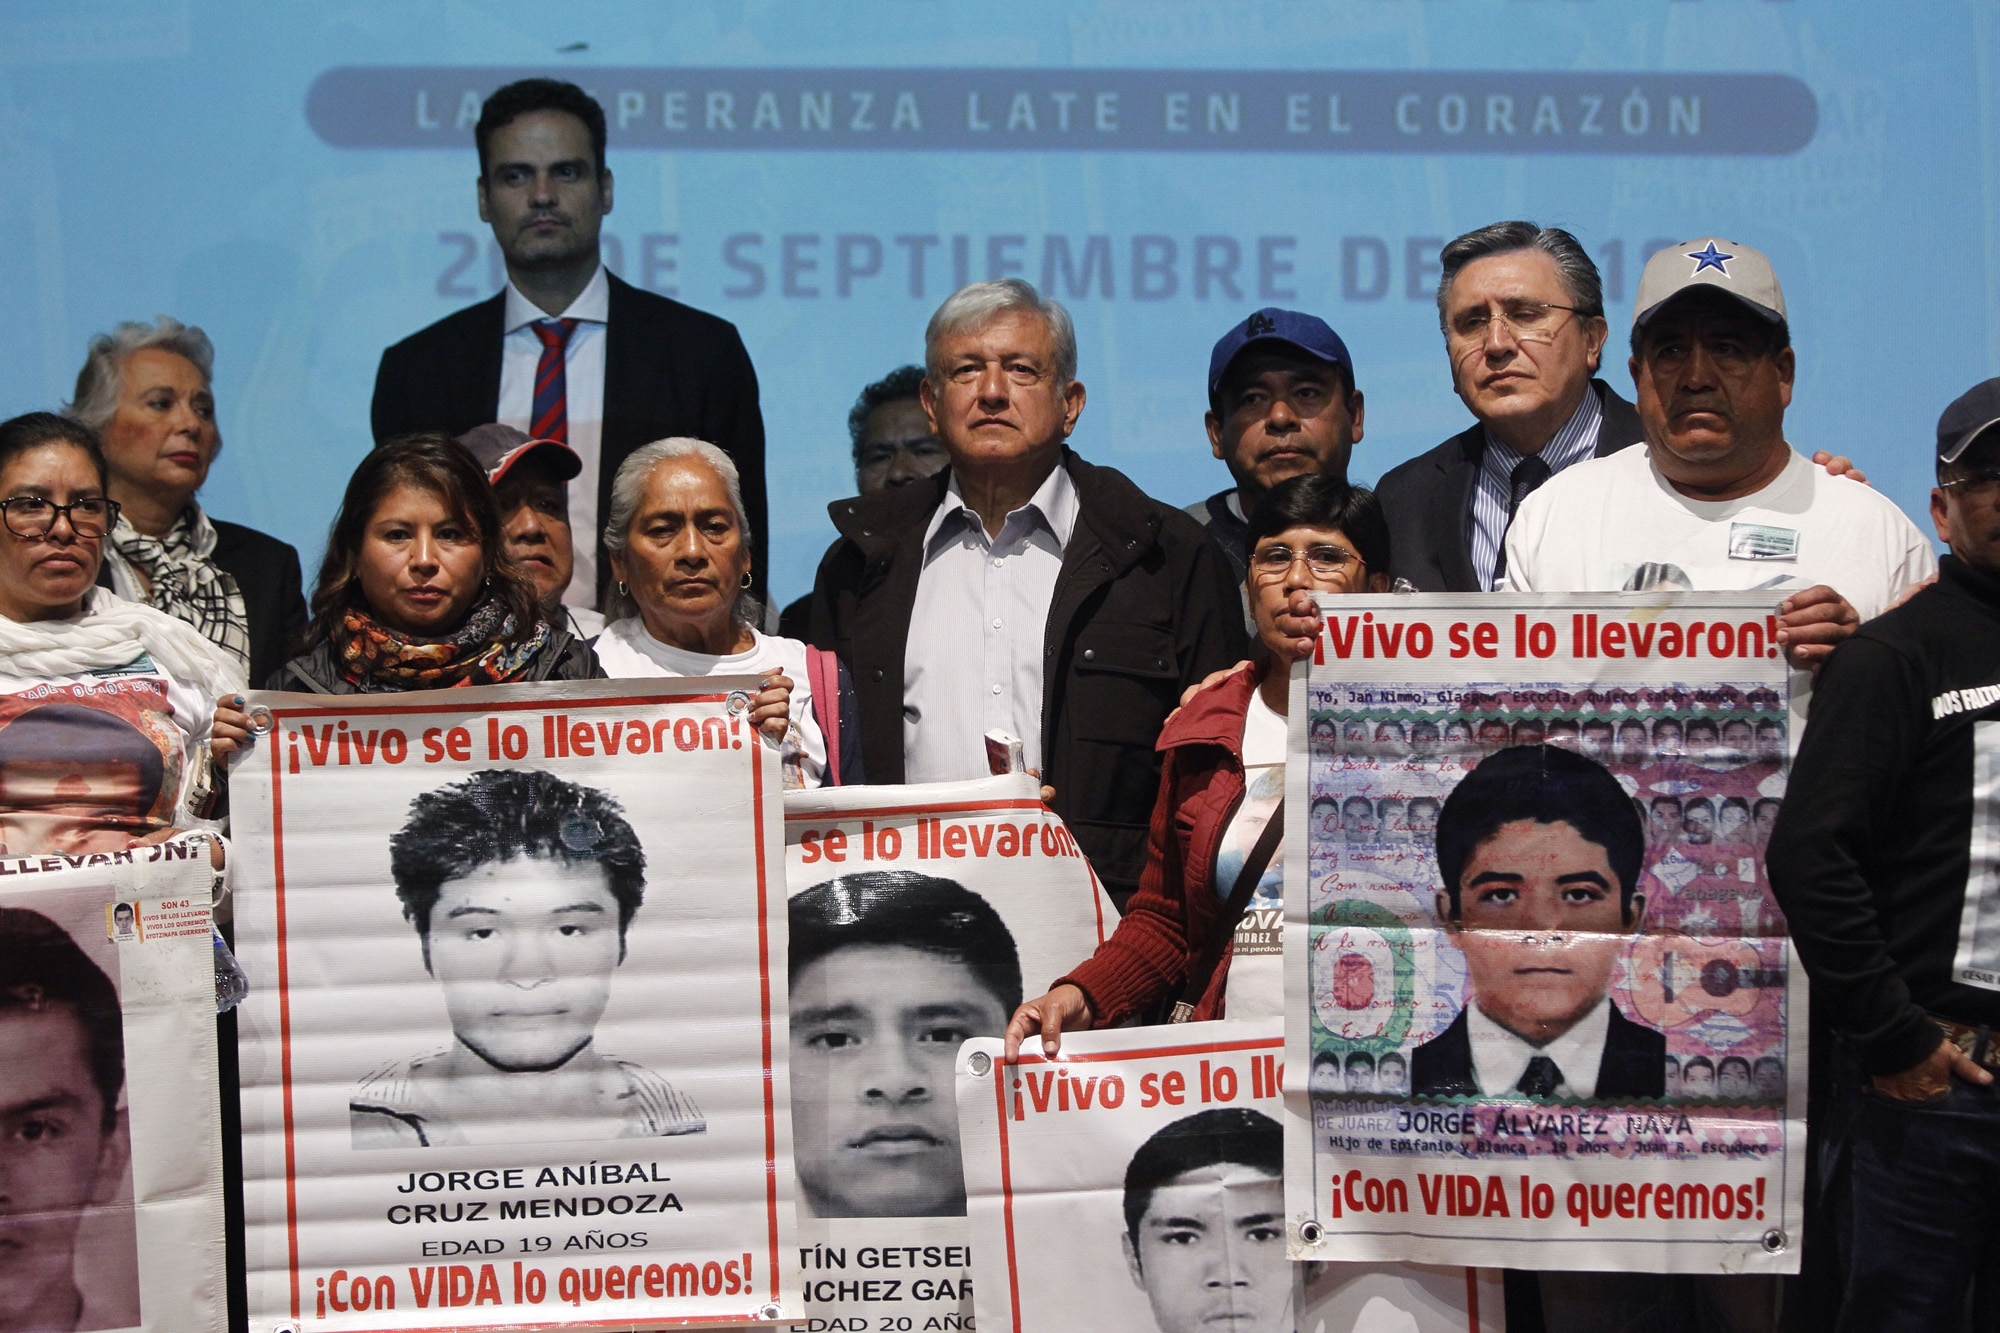 A cuatro años de la tragedia: López Obrador se compromete a establecer comisión de verdad sobre de 43 desaparecidos